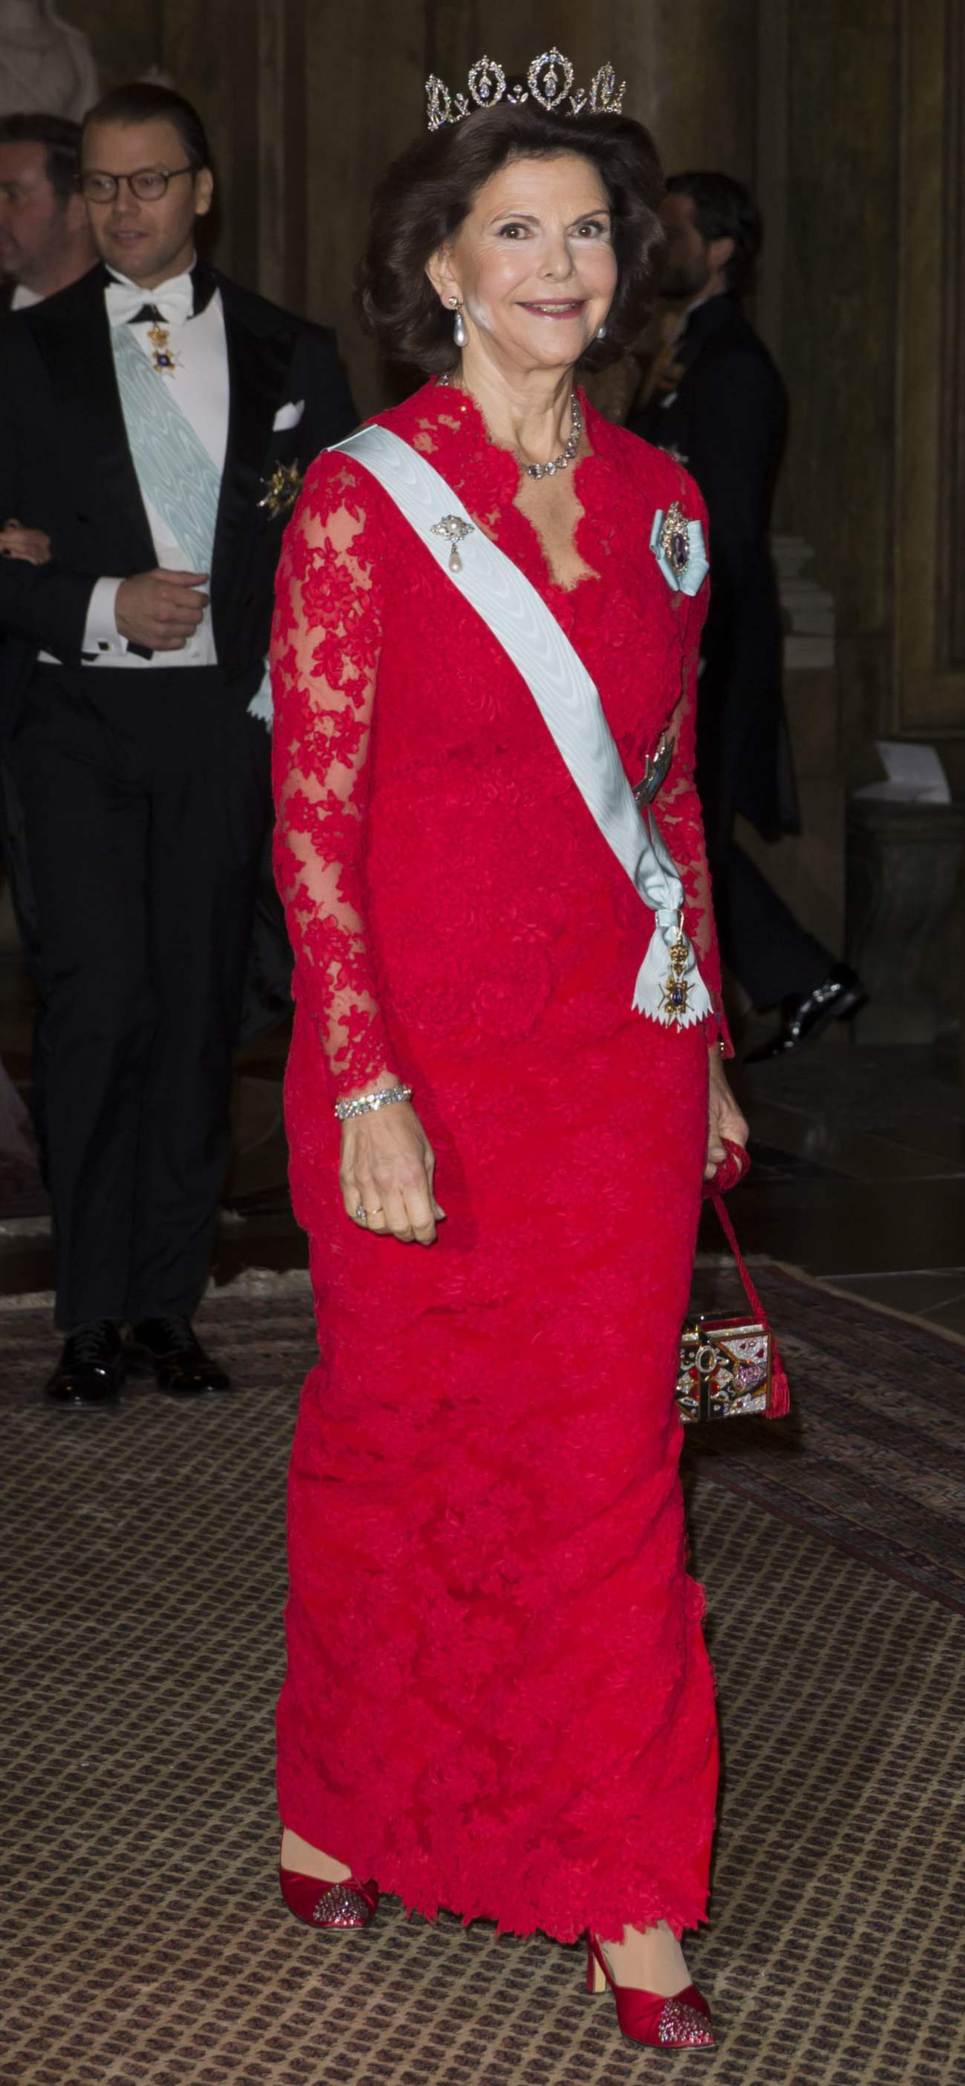 Queen-Silvia-Nobel-Laureates-Dinner.jpg